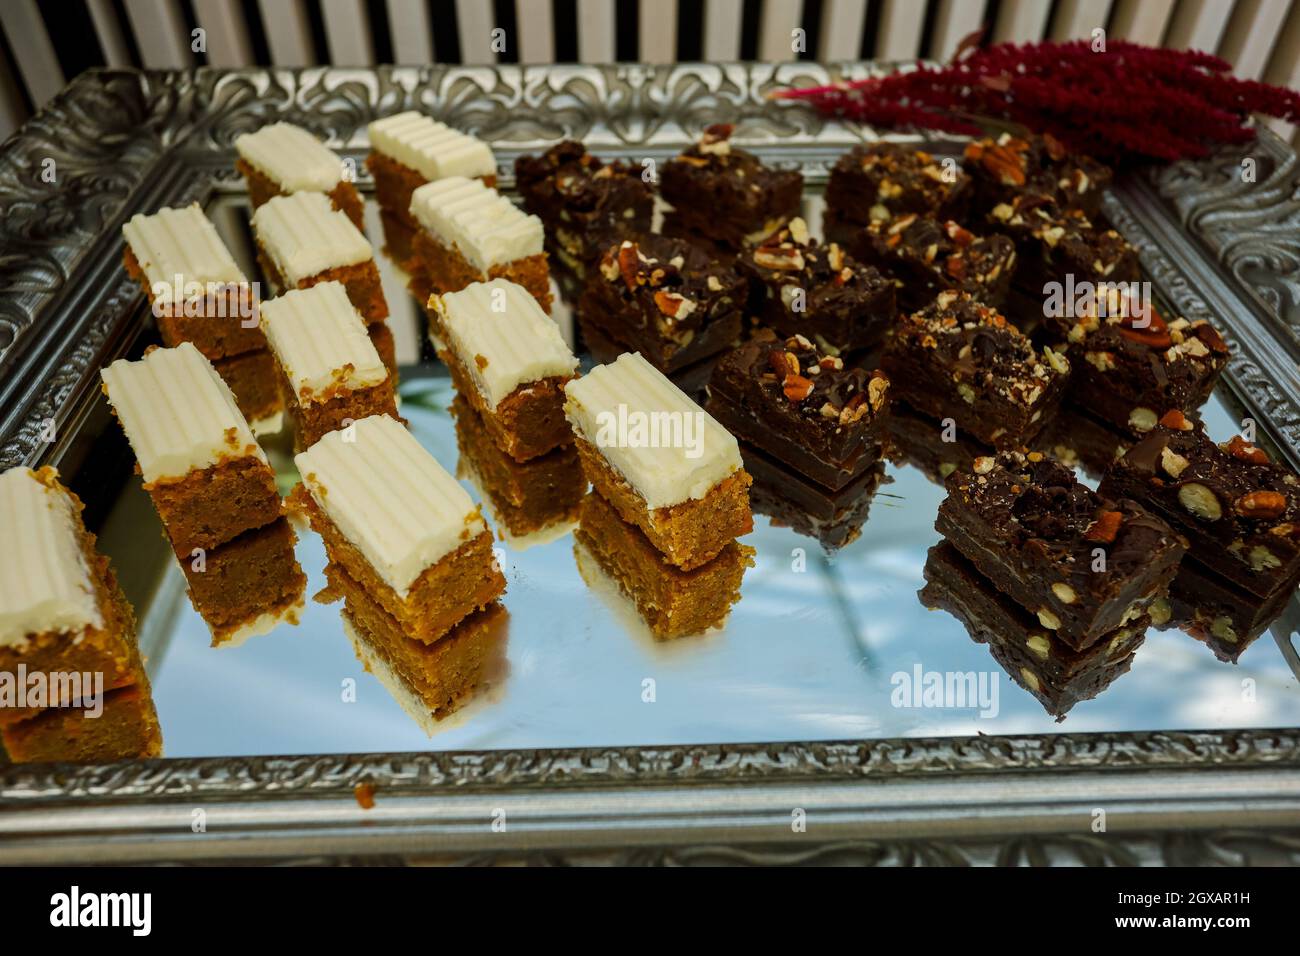 Fette biscottate con noci, cacao e caramello al tavolo del buffet, servite sul vassoio d'argento Foto Stock